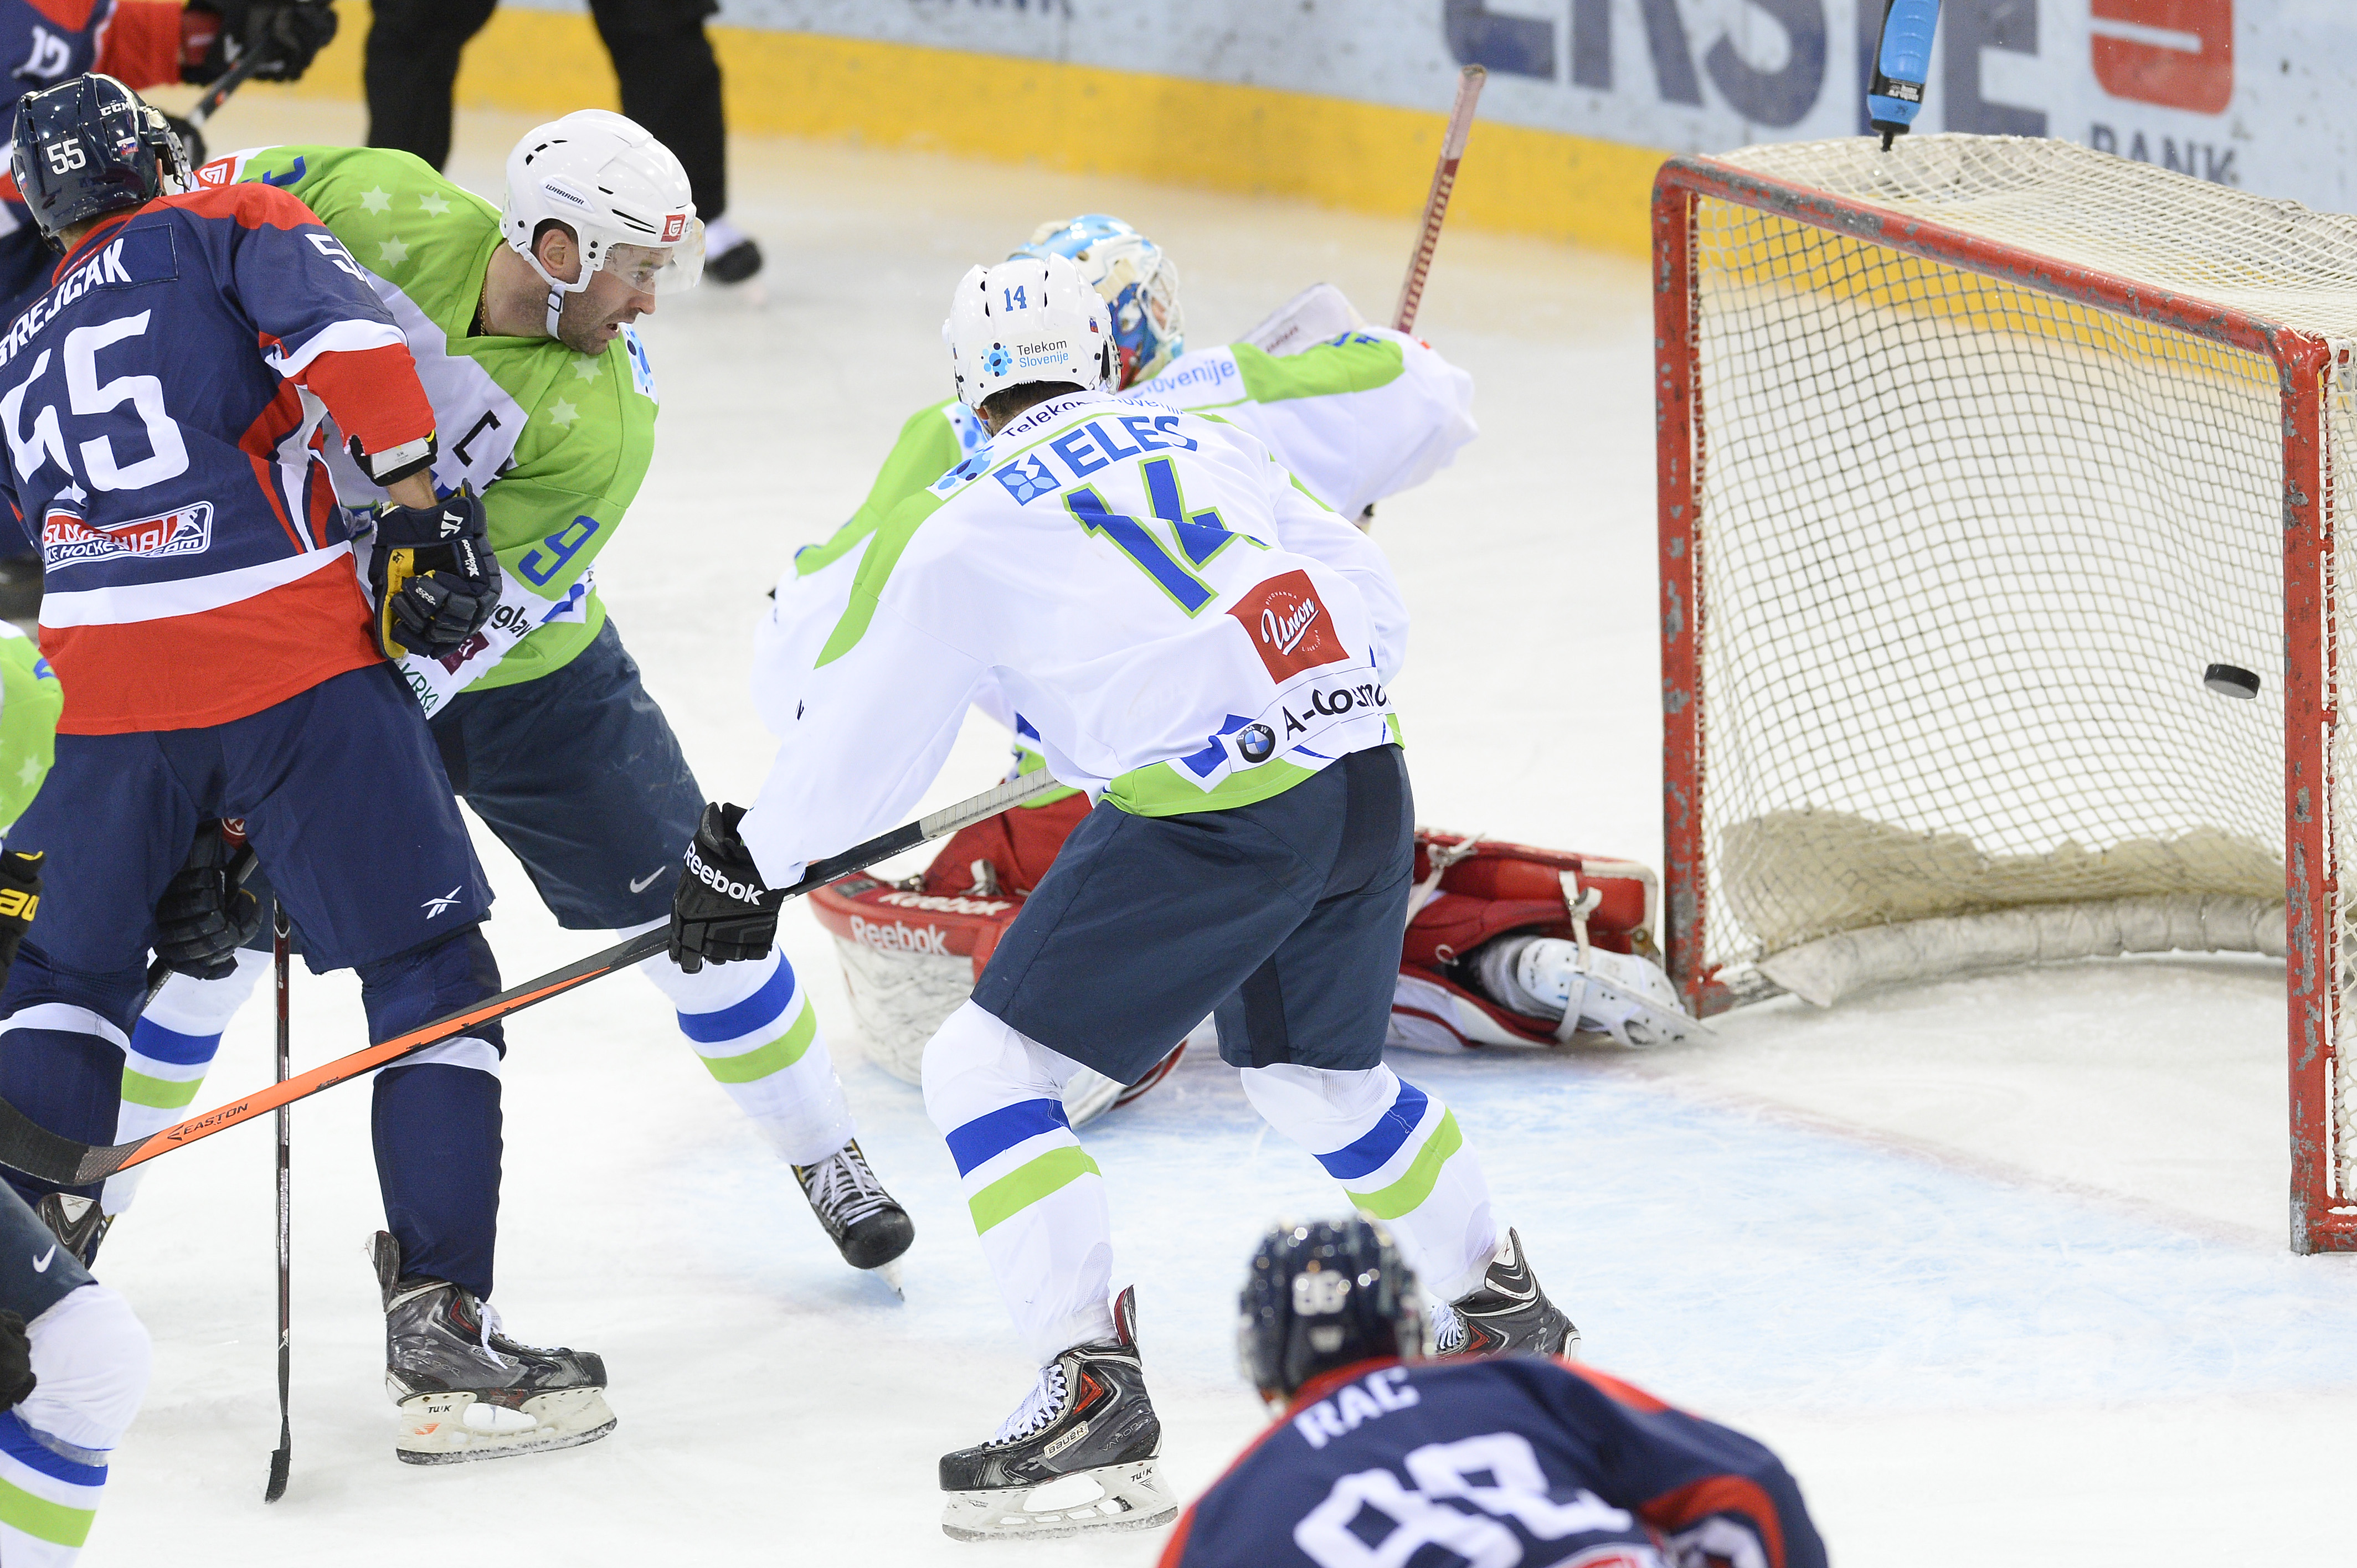 Vľavo Ján Brejčák (Olympijský tím SR) a v strede Matic Podlipnik  (Slovinsko) sa prizerajú gólu v zápase turnaja Euro Ice Hockey Challenge Slovinsko - Slovensko v rakúskej Viedni 6. februára 2015.